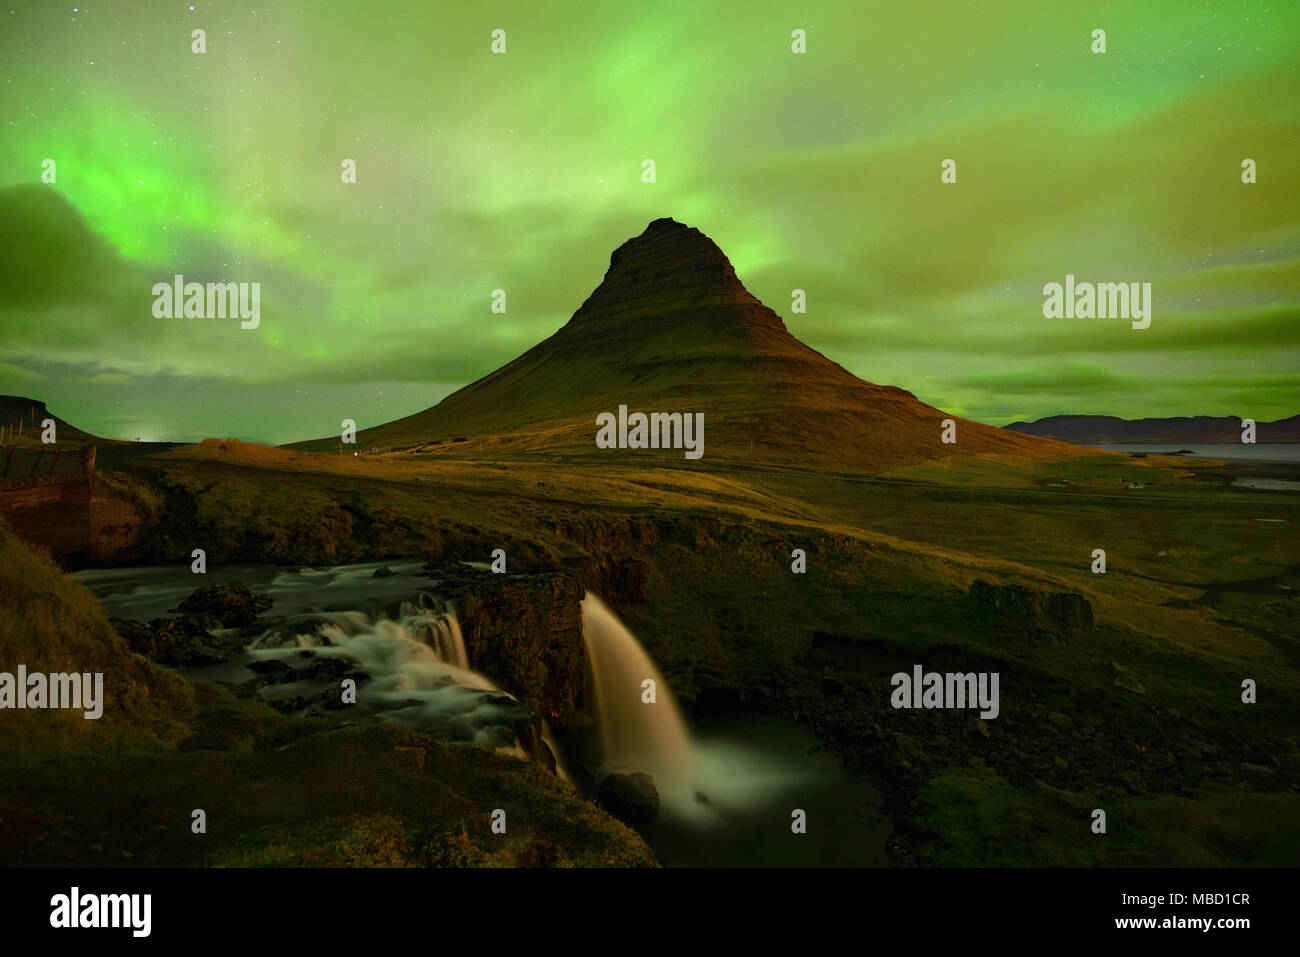 Das Nordlicht am Berg Kirkjufell Island. Landschaft mit Wasserfall Kirkjufellsfoss, mit grünen Bands der Aurora Borealis. Snaefellnes, Icela Stockfoto